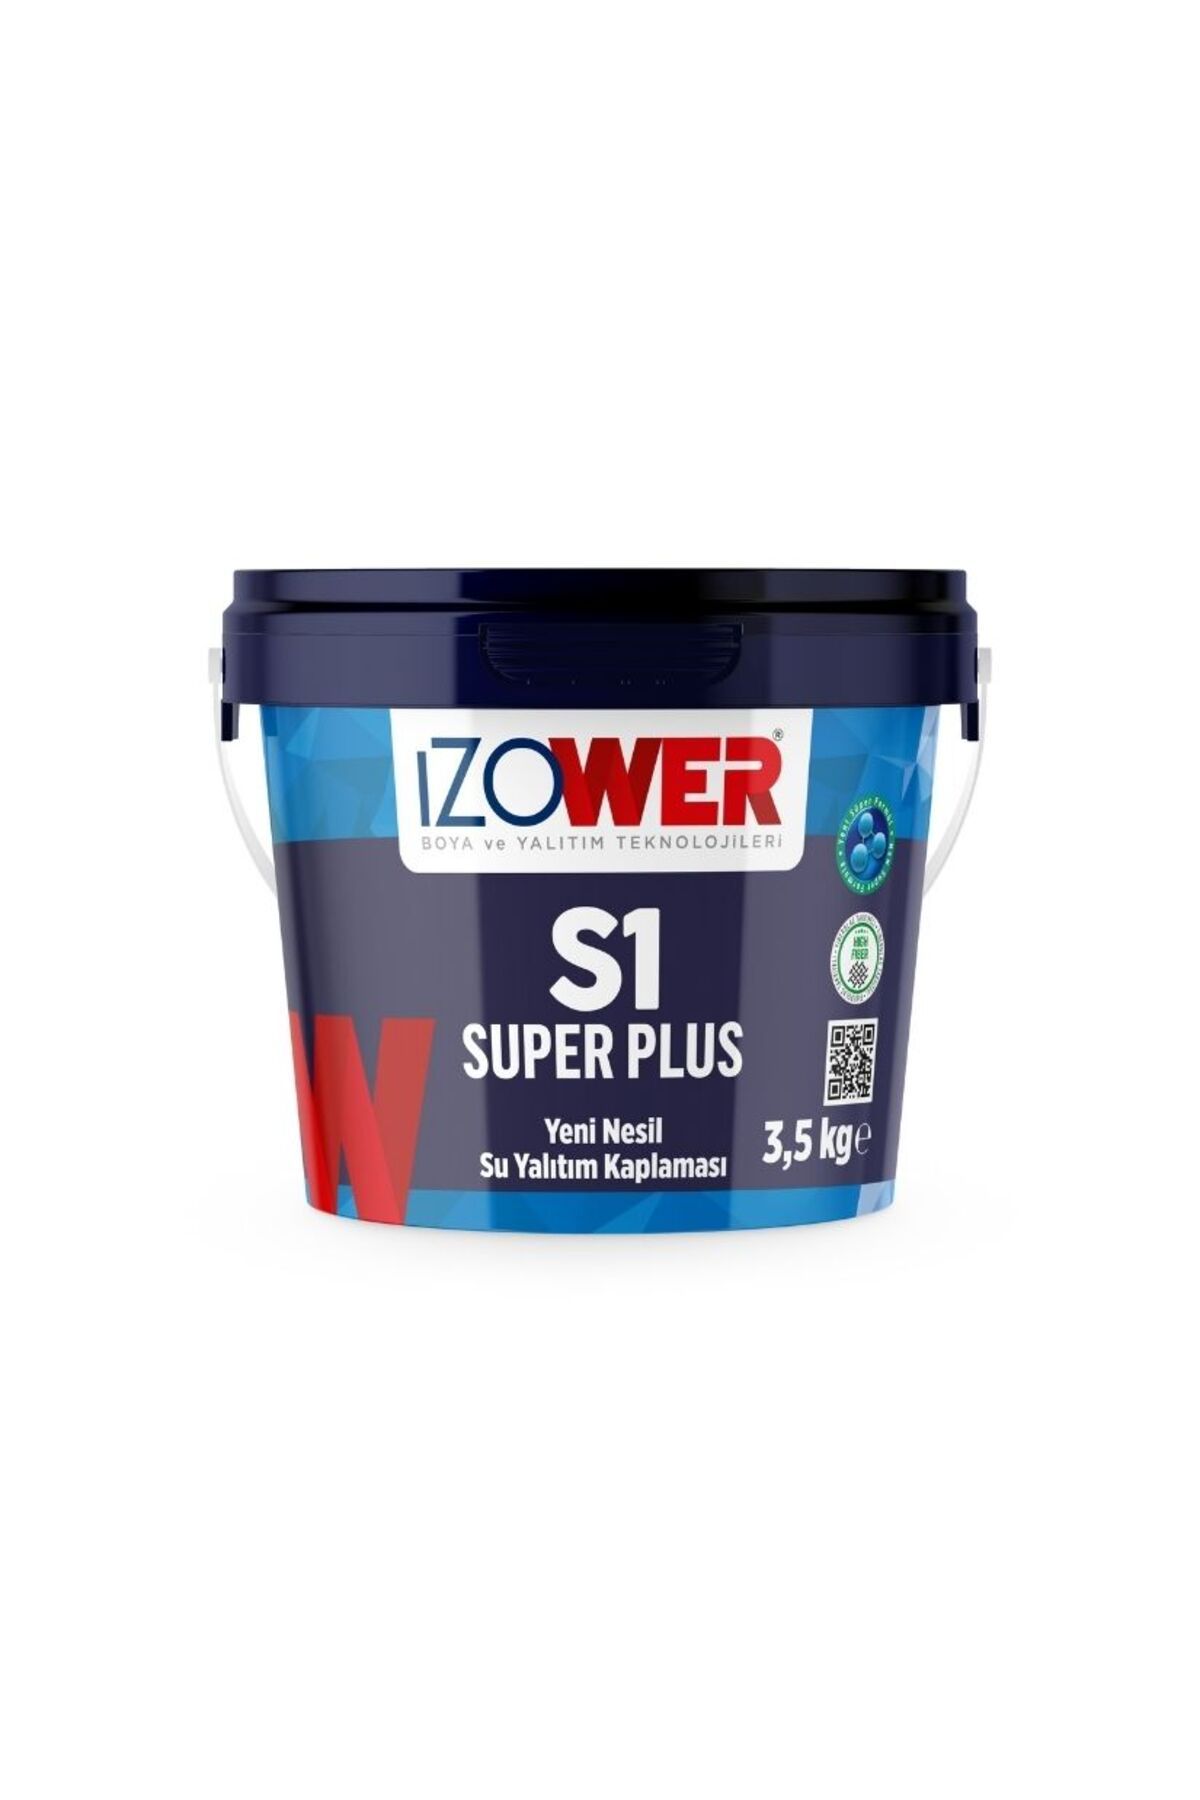 izower S1 Süper Plus Su Yalıtım Kaplaması- Sarı- 3.5 Kg